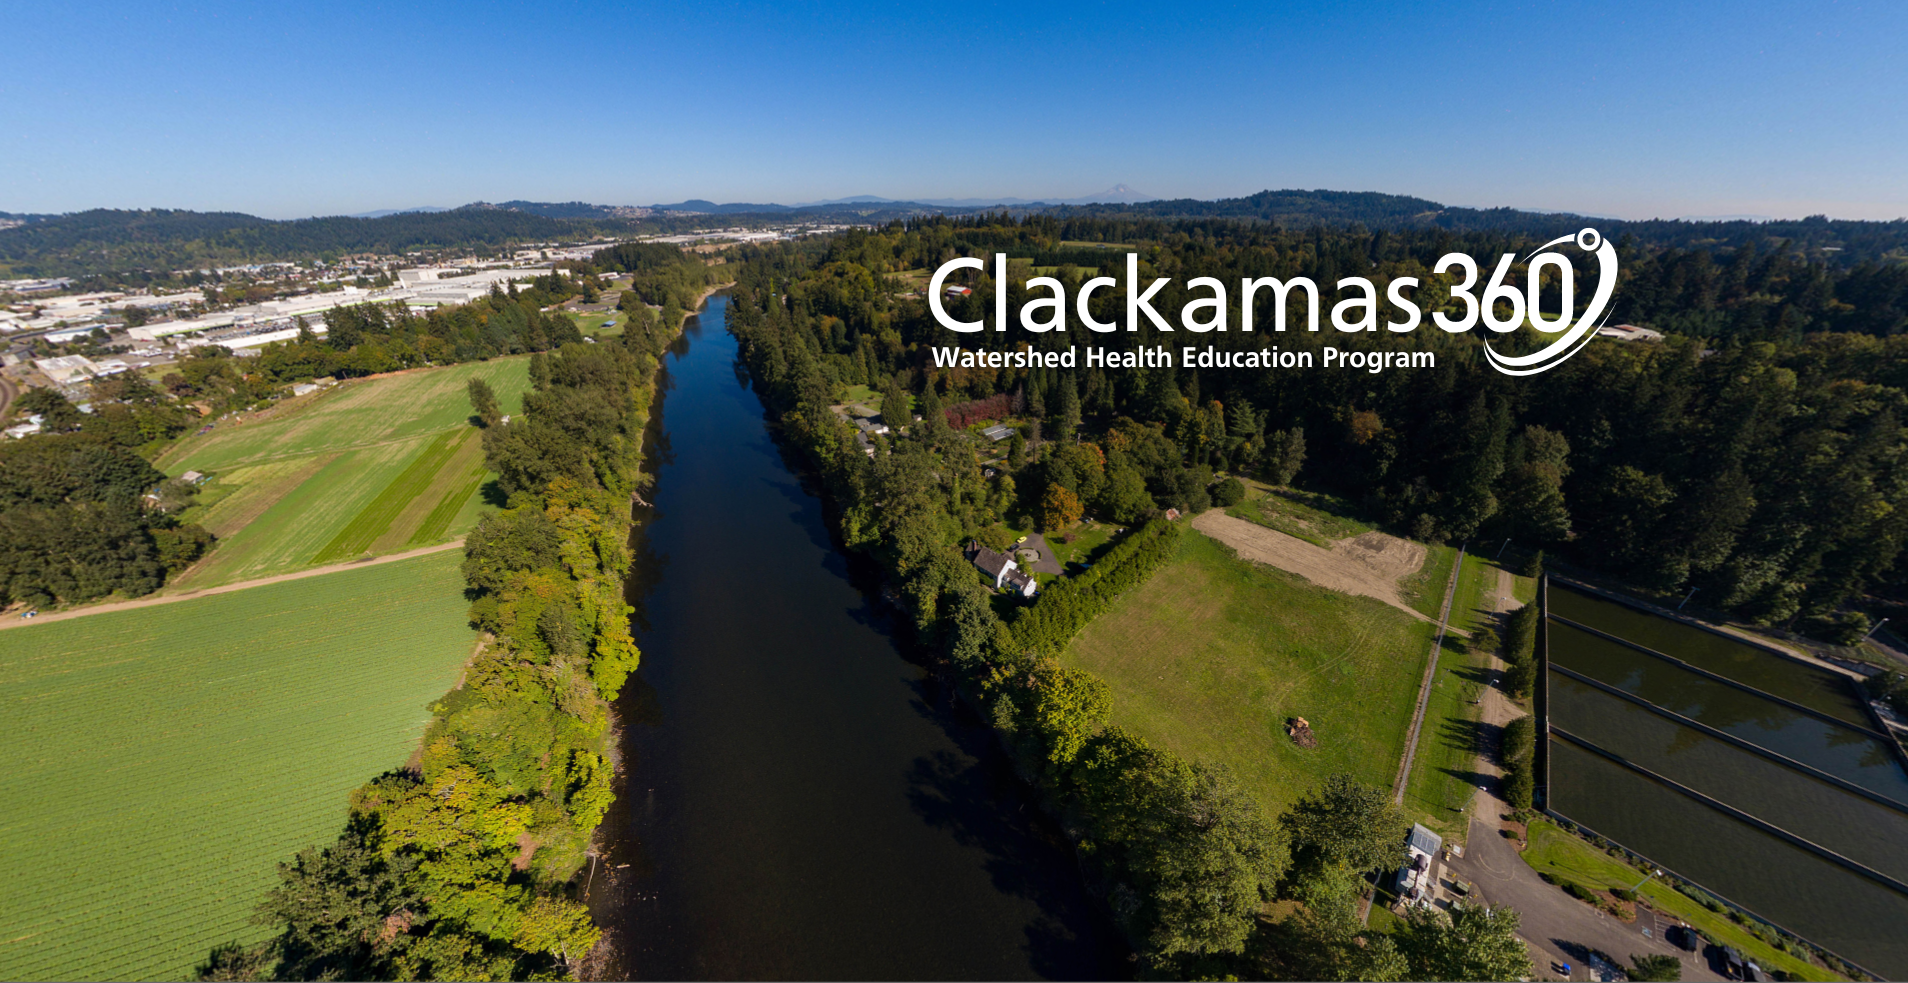 Clackamas River Basin Council Clackamas360 Watershed Health Education Program